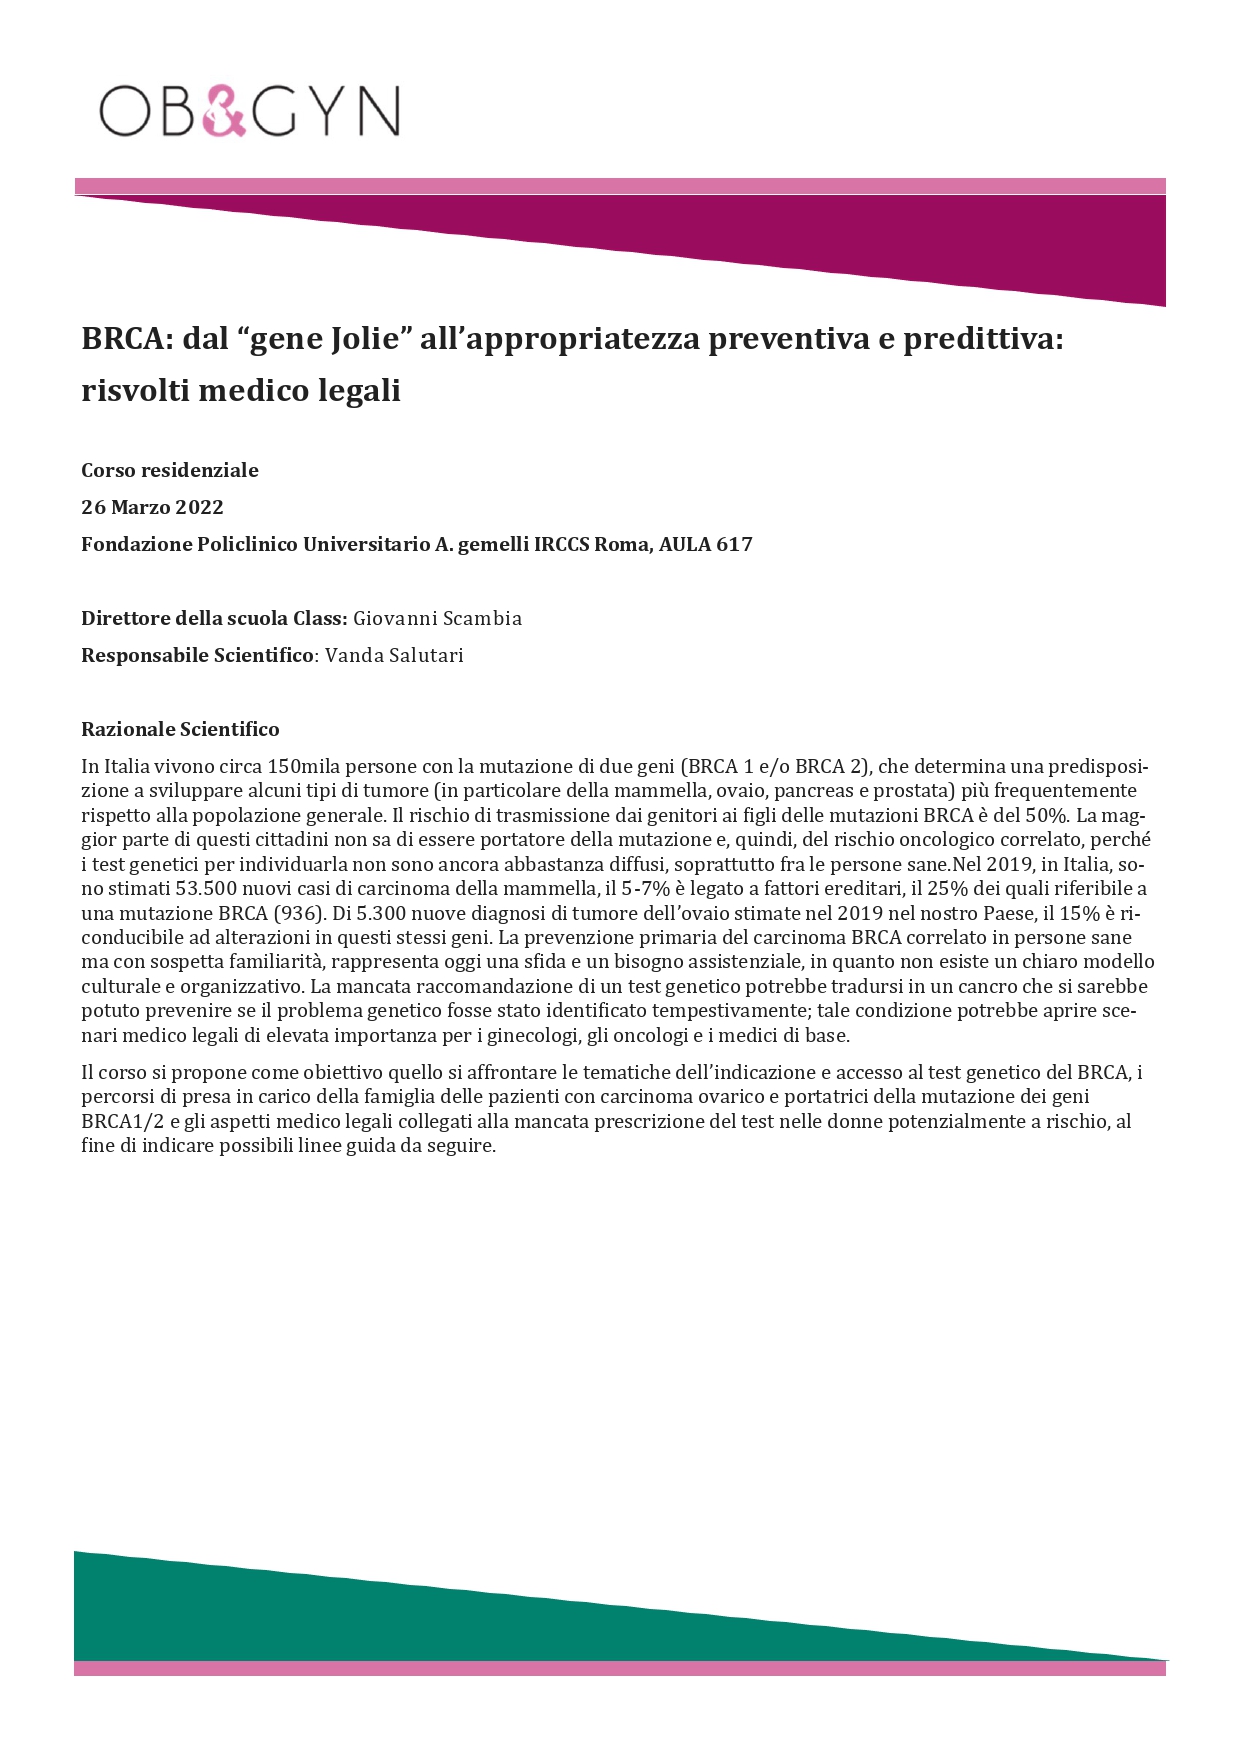 Programma BRCA: dal “gene Jolie” all’appropriatezza preventiva e predittiva: risvolti medico legali